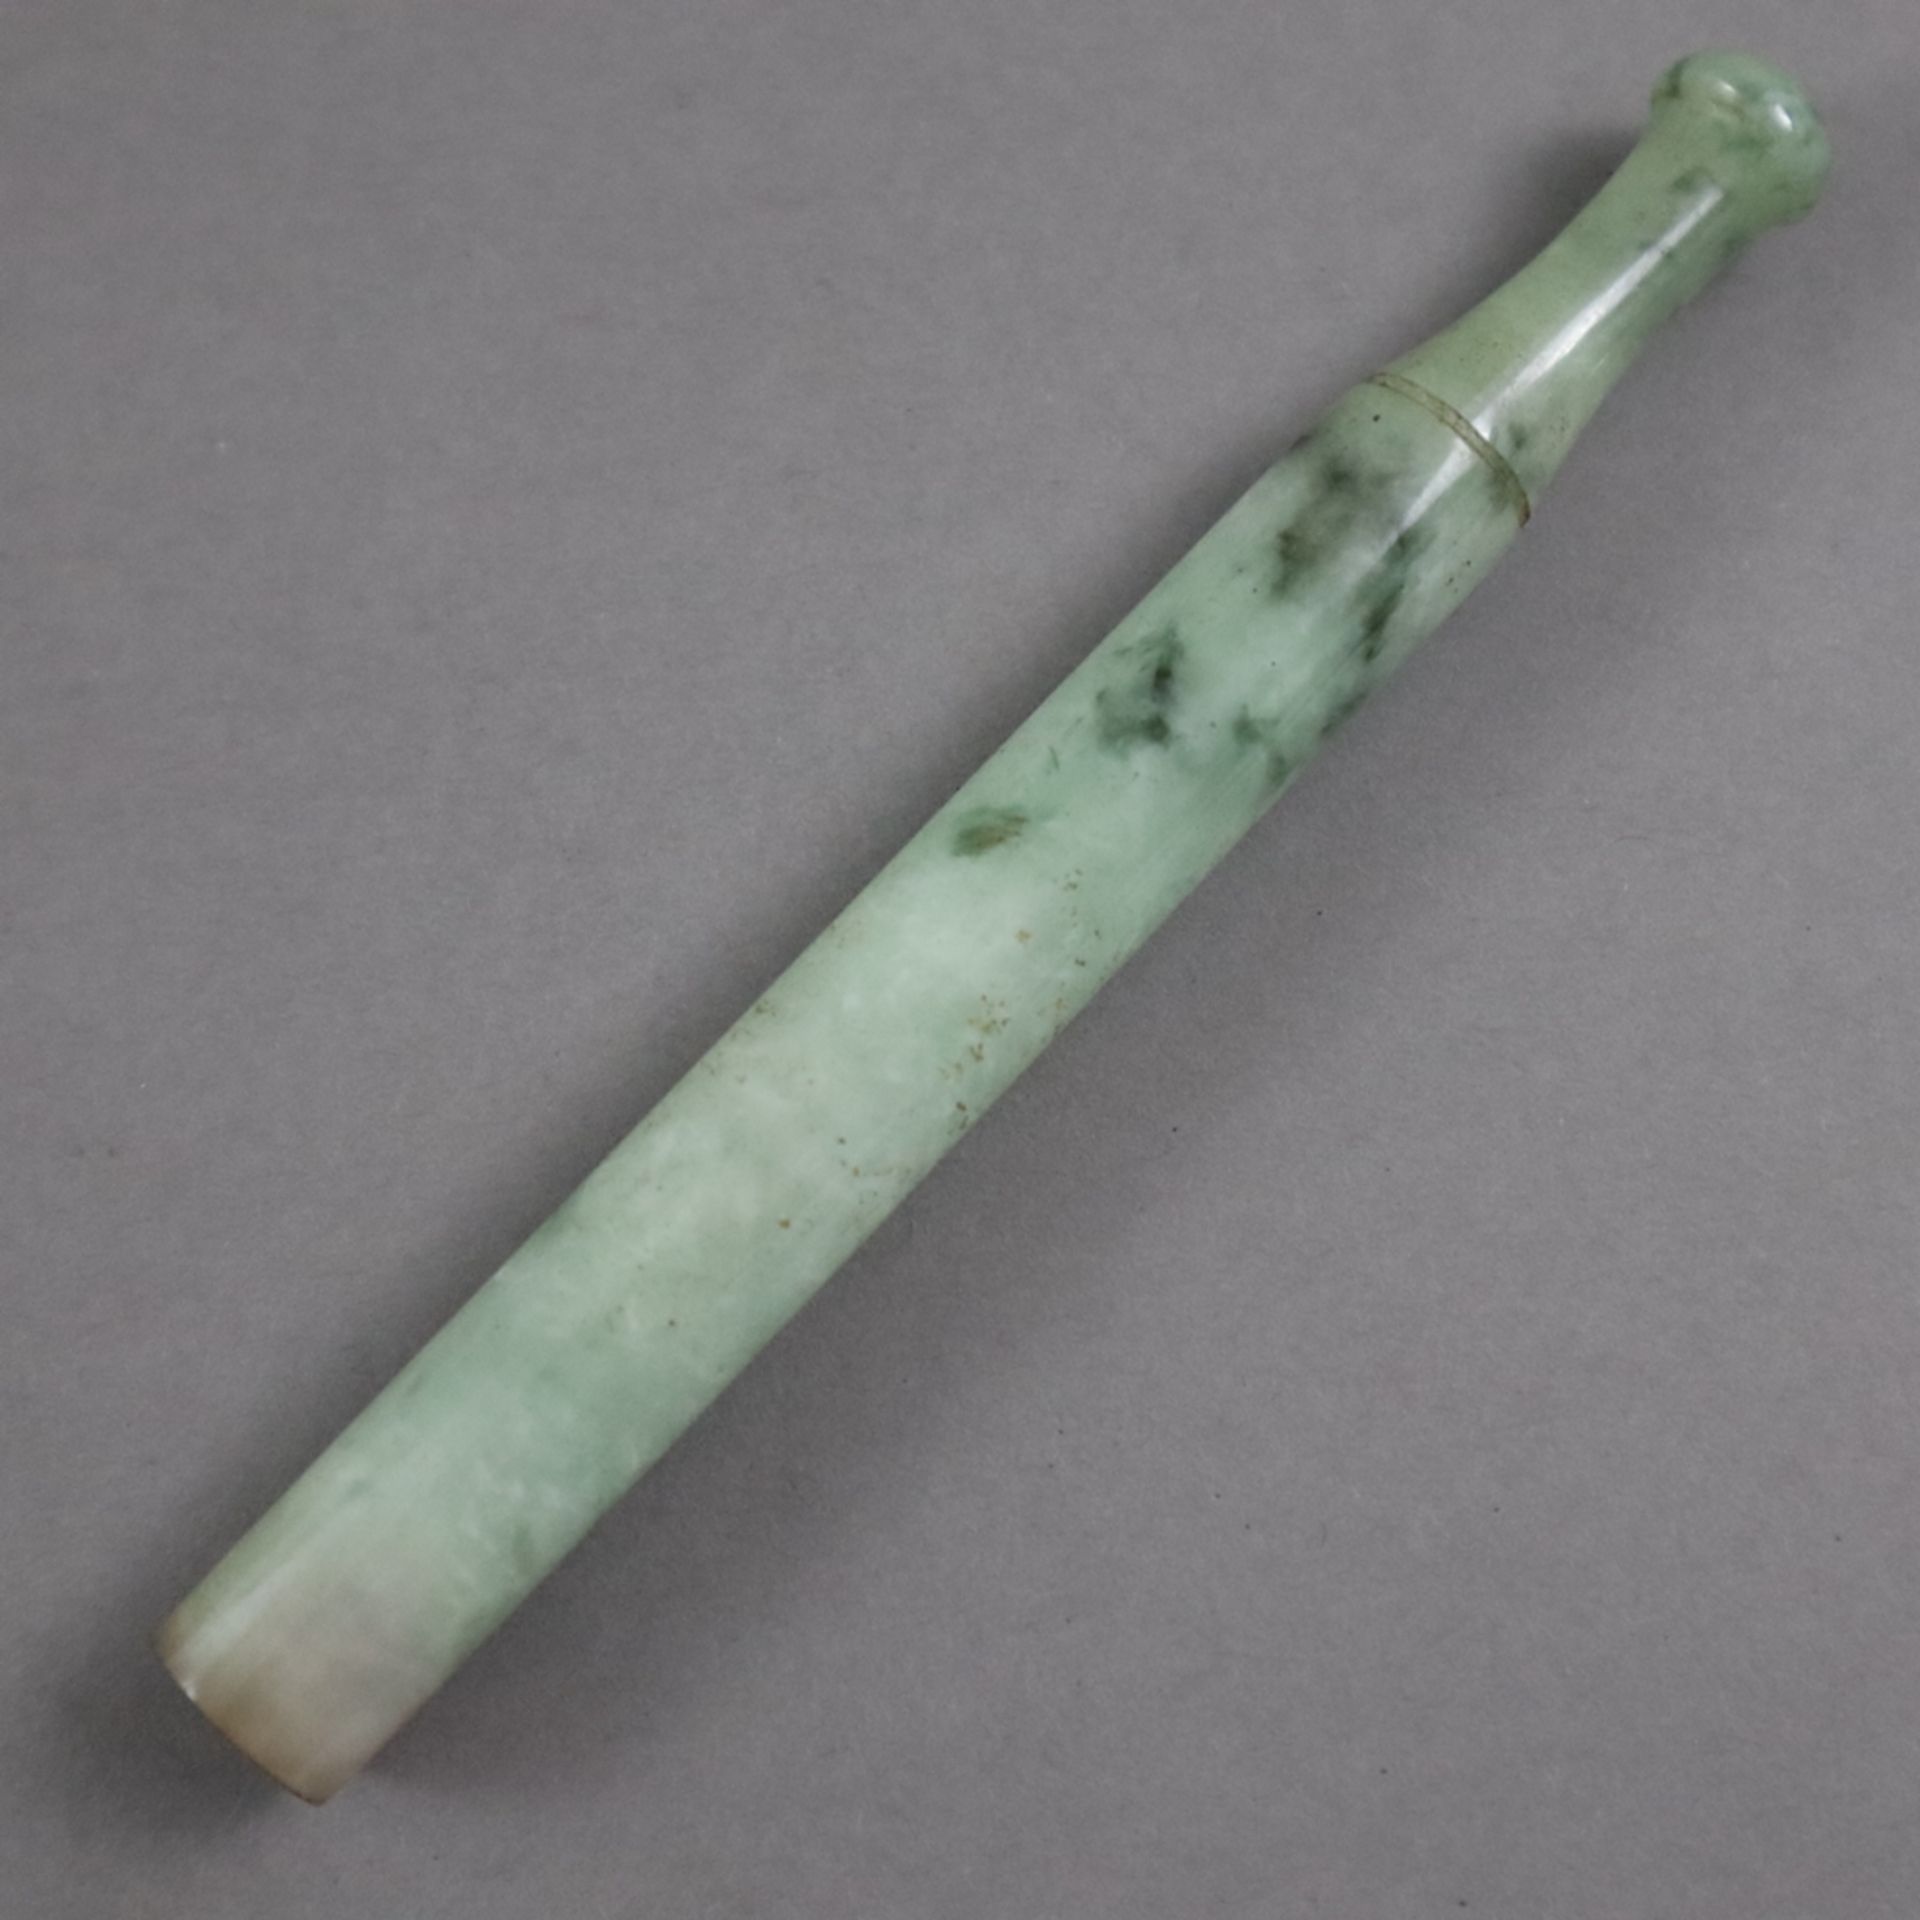 Zigarettenspitze aus Jade - China 20. Jh., seladonfarben gewölkte Jade mit leichten schwarzen Einfä